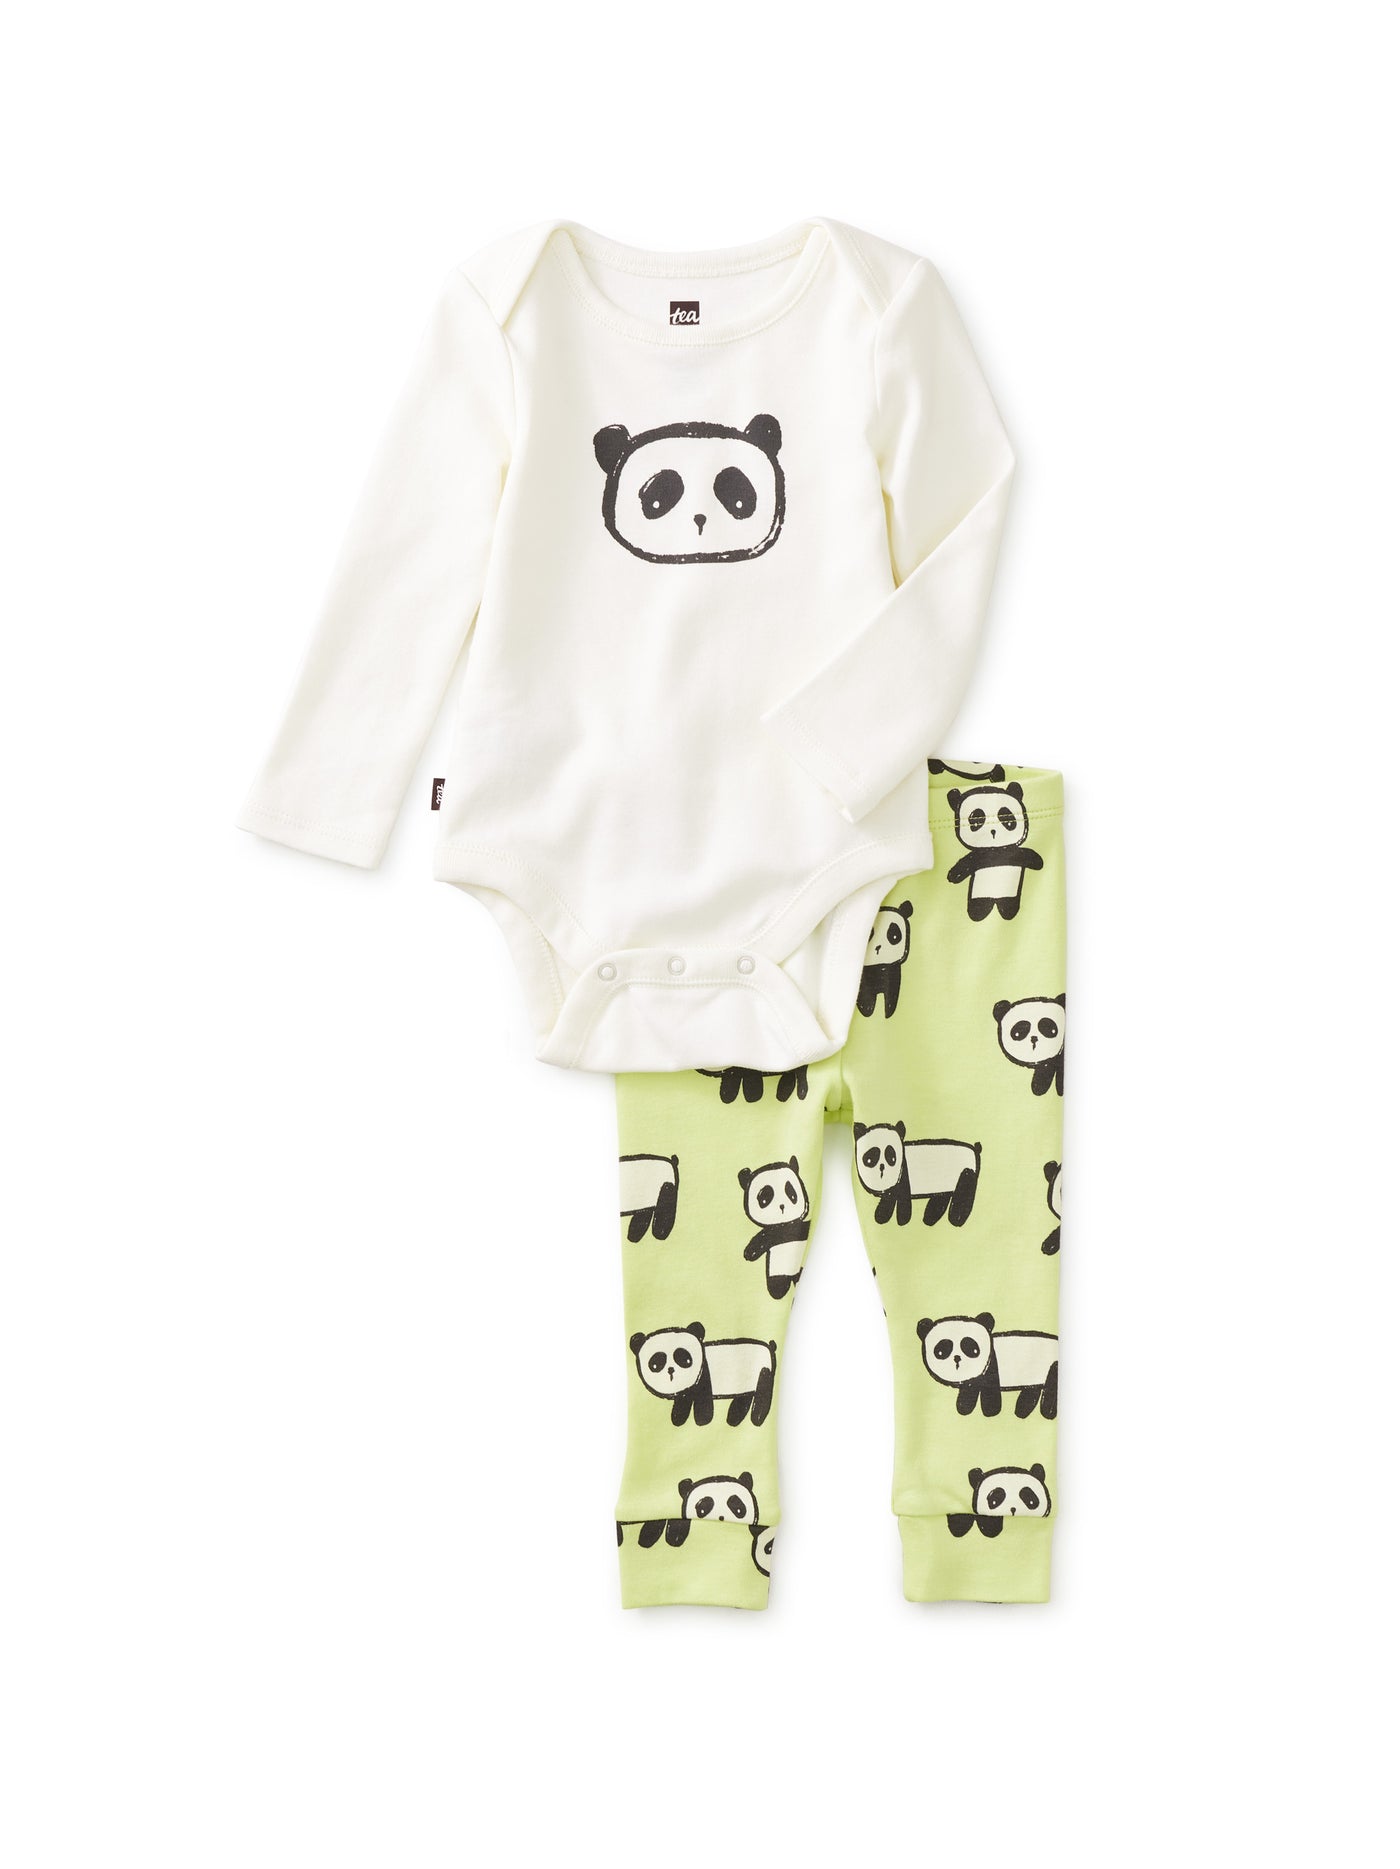 Panda Parade 2 Piece Outfit